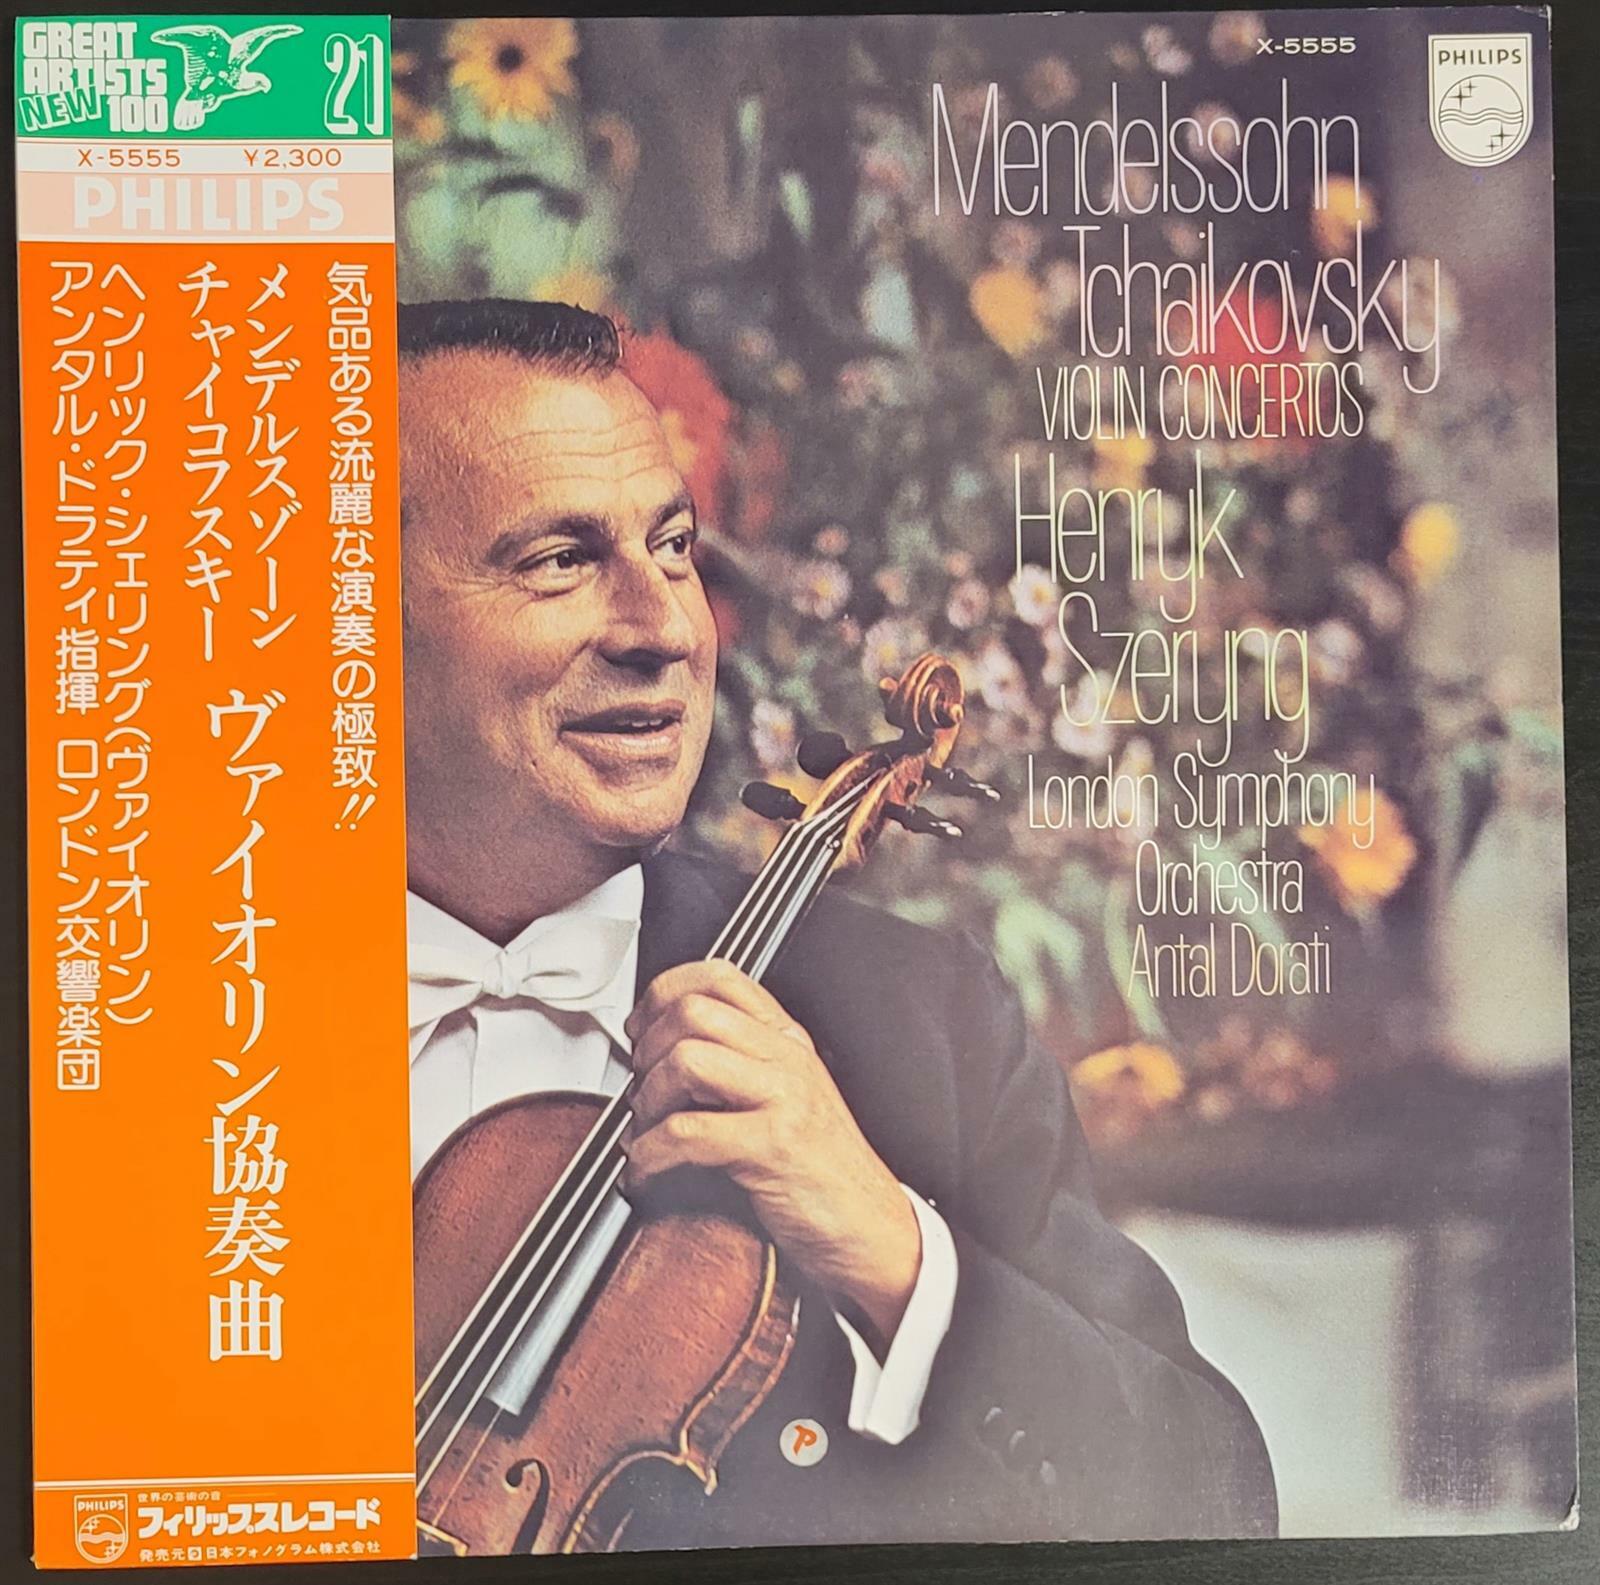 [중고] [LP] 74년 Mendelssohn Tchaikovsky Violin Concerto Szeryng 멘델스존 차이콥스키 바이올린 협주곡 셰링 [일본반] 1974년